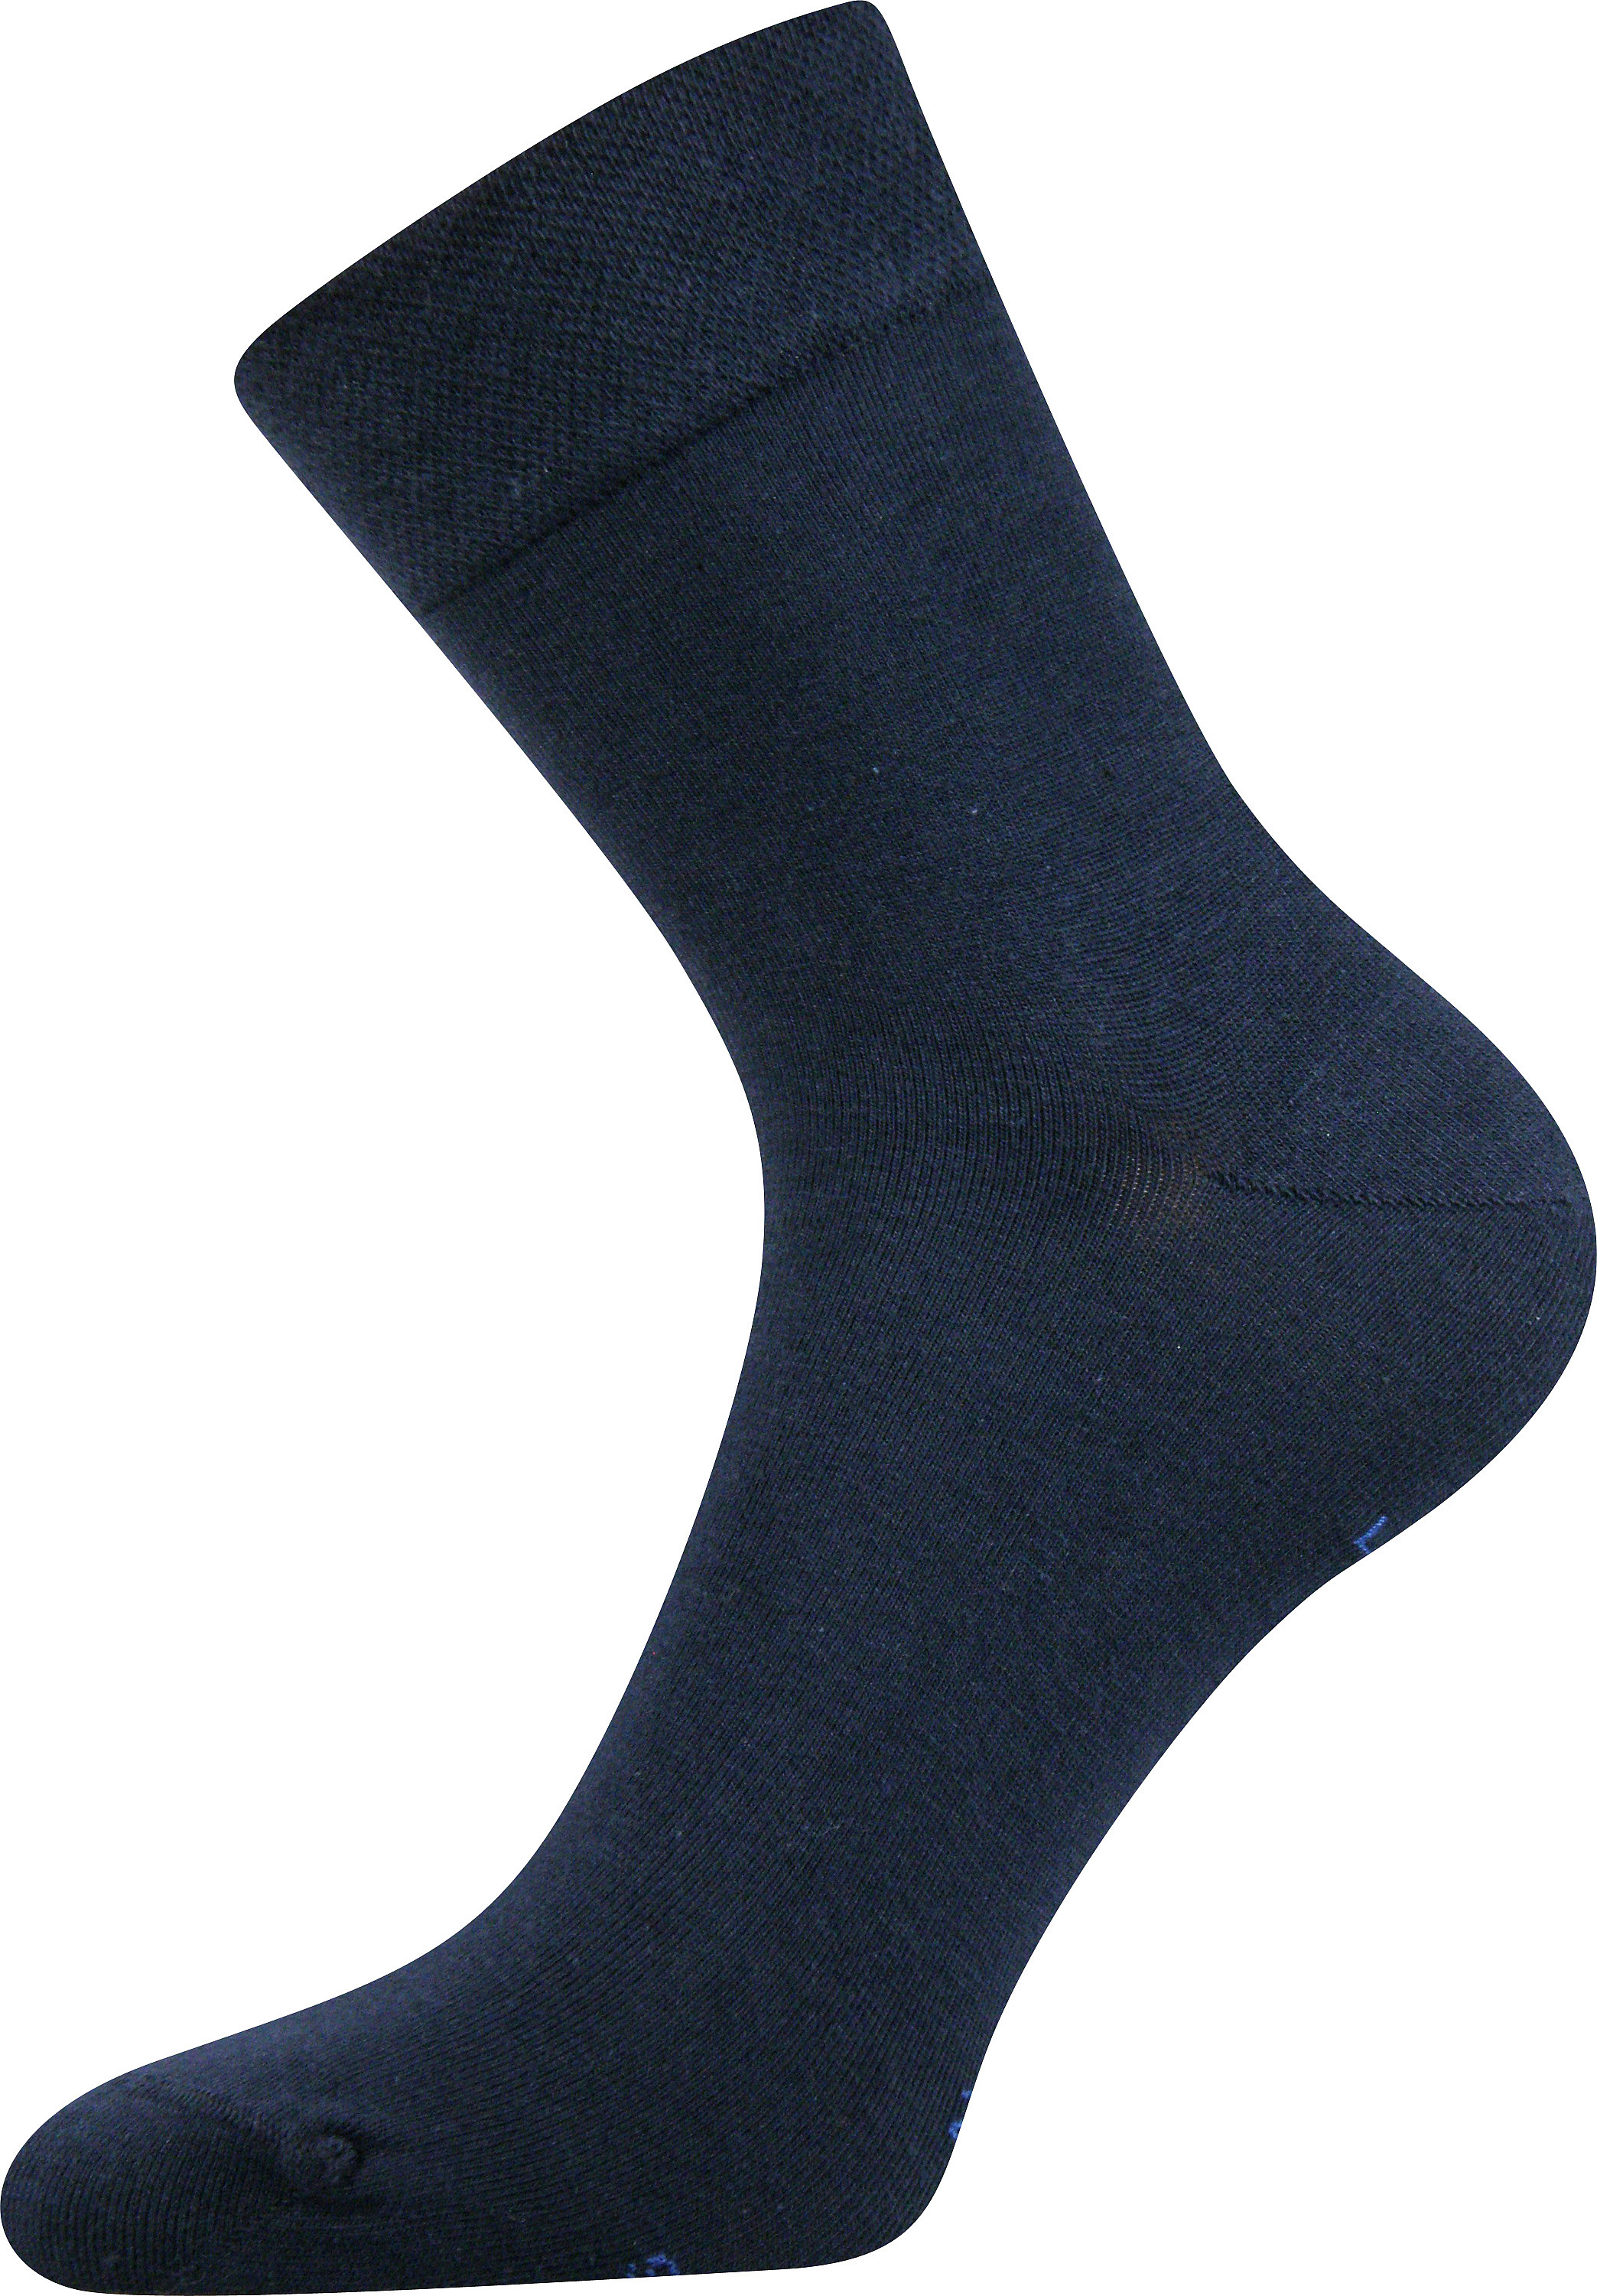 Ponožky společenské Lonka Haner - navy, 43-46